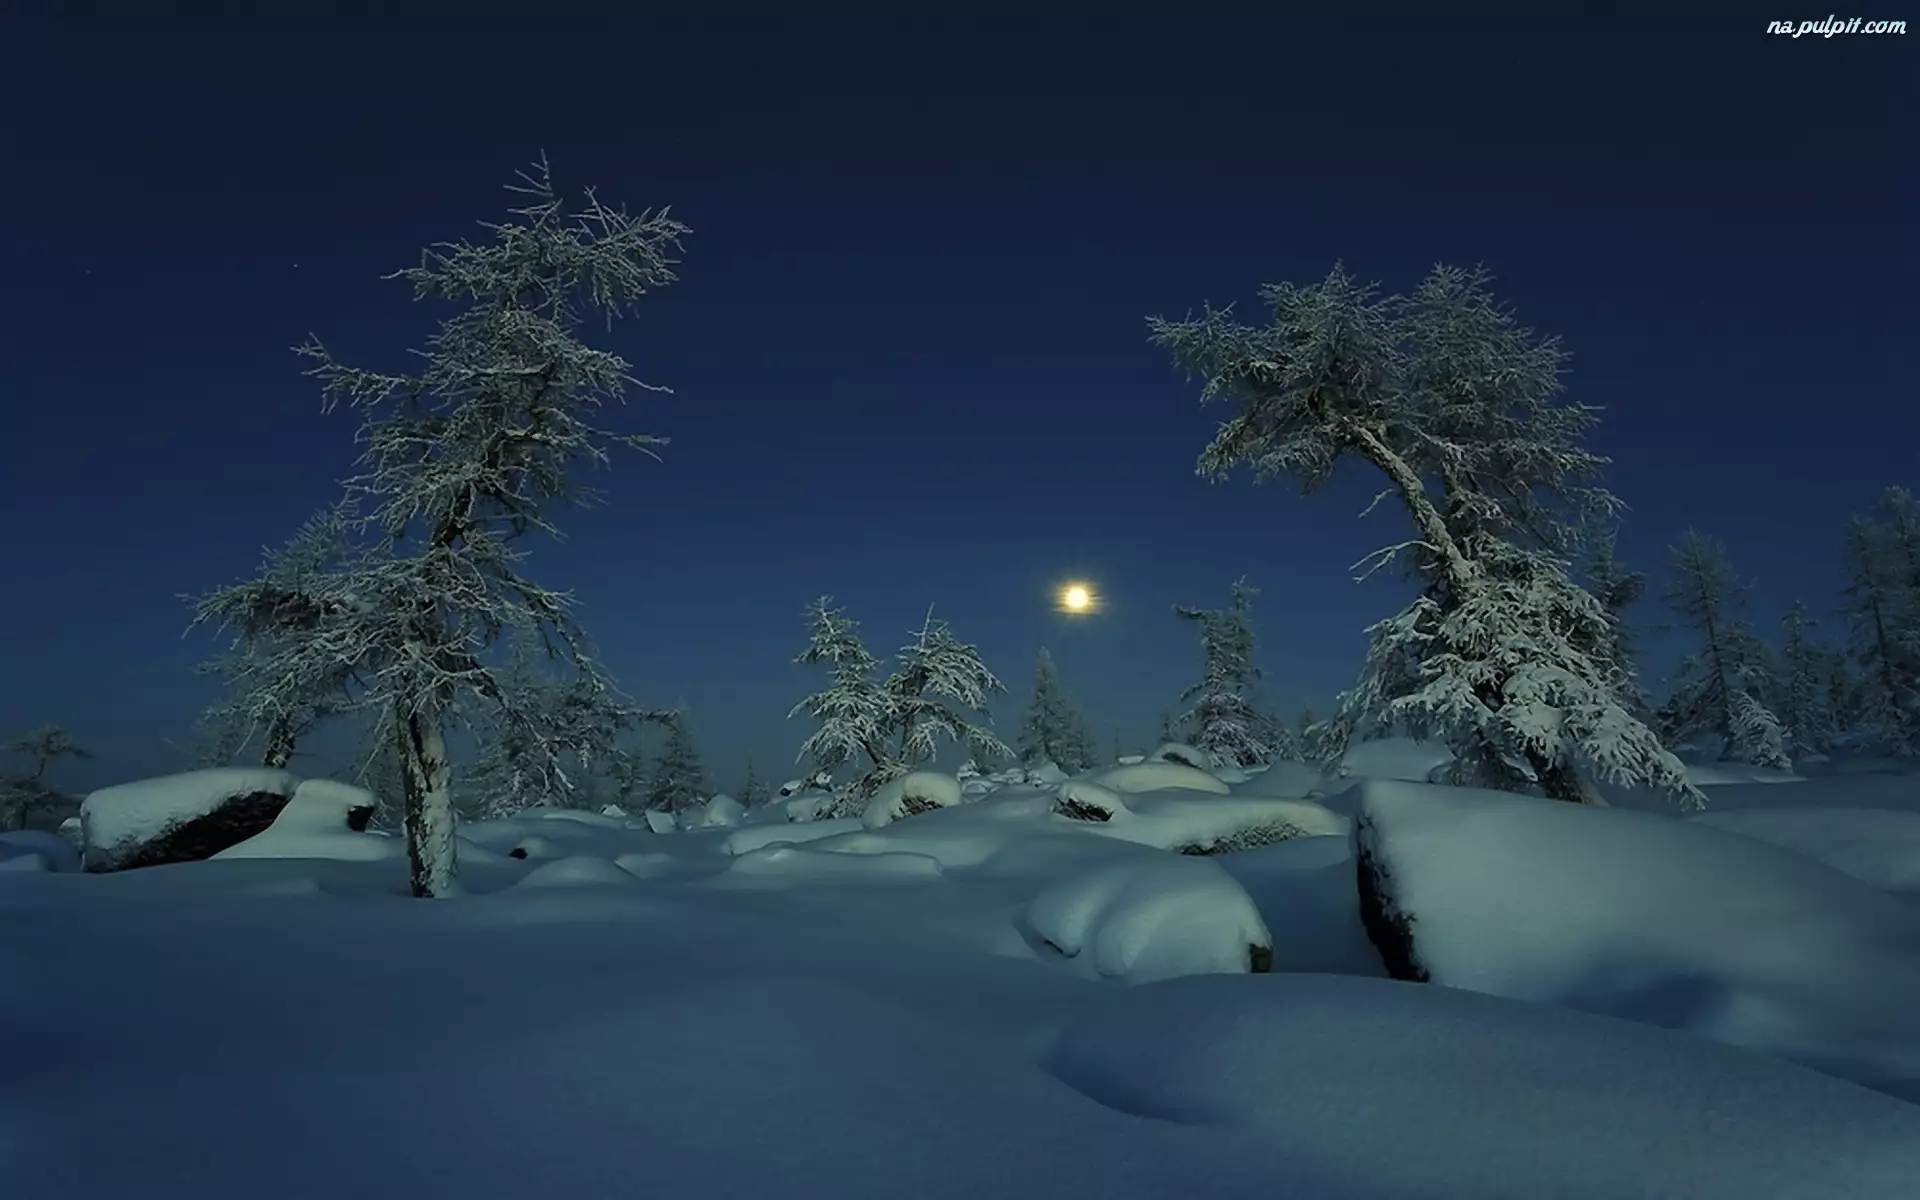 Śnieg, Księżyc, Drzewa